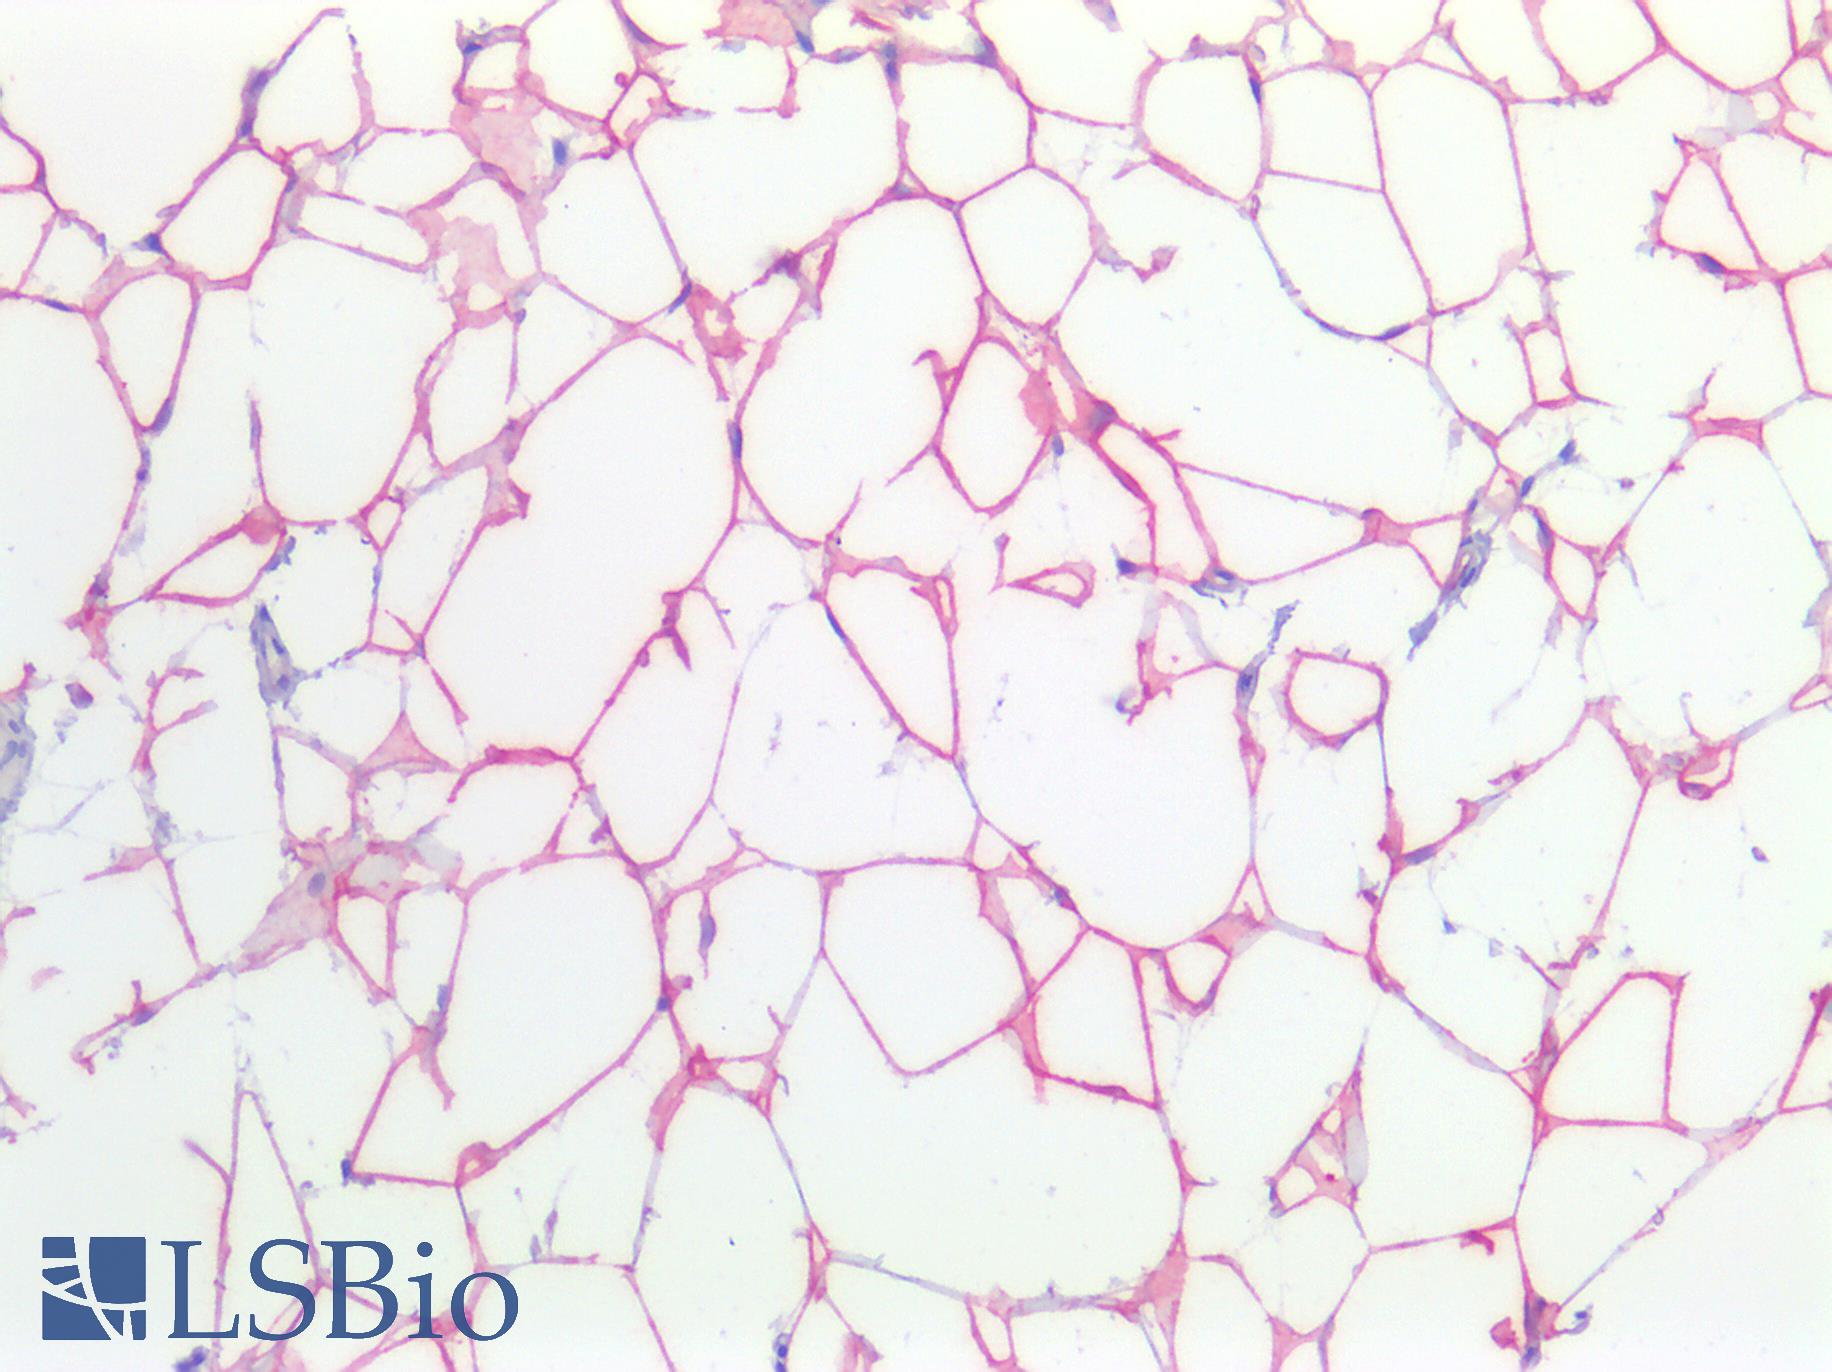 FASN / Fatty Acid Synthase Antibody - Human Breast, Adipocytes: Formalin-Fixed, Paraffin-Embedded (FFPE)